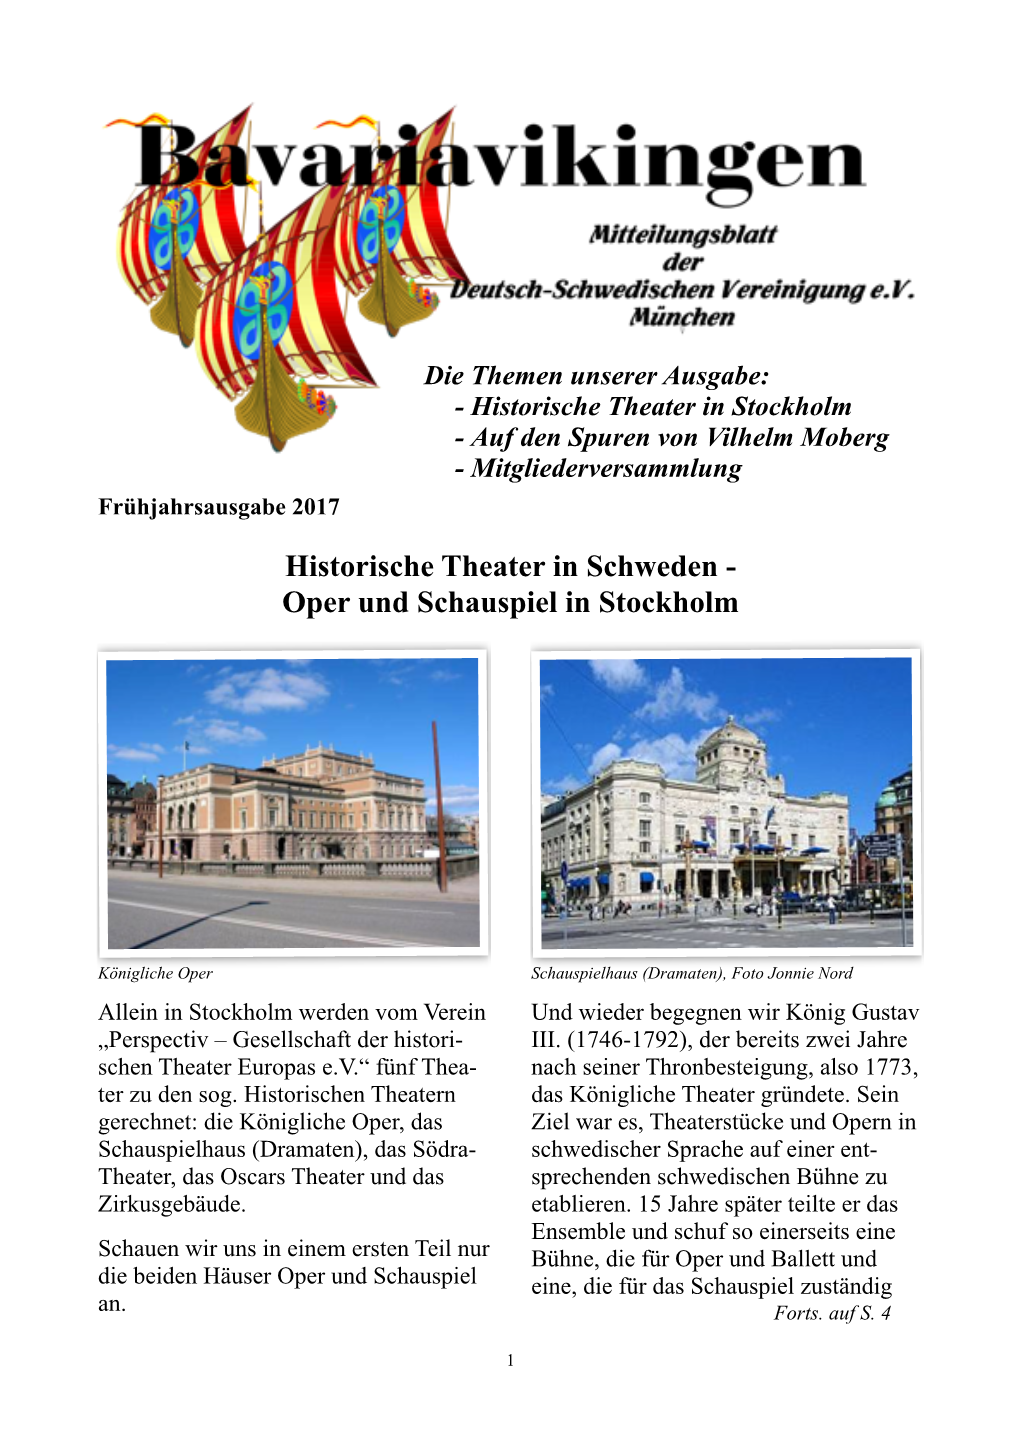 Historische Theater in Schweden - Oper Und Schauspiel in Stockholm